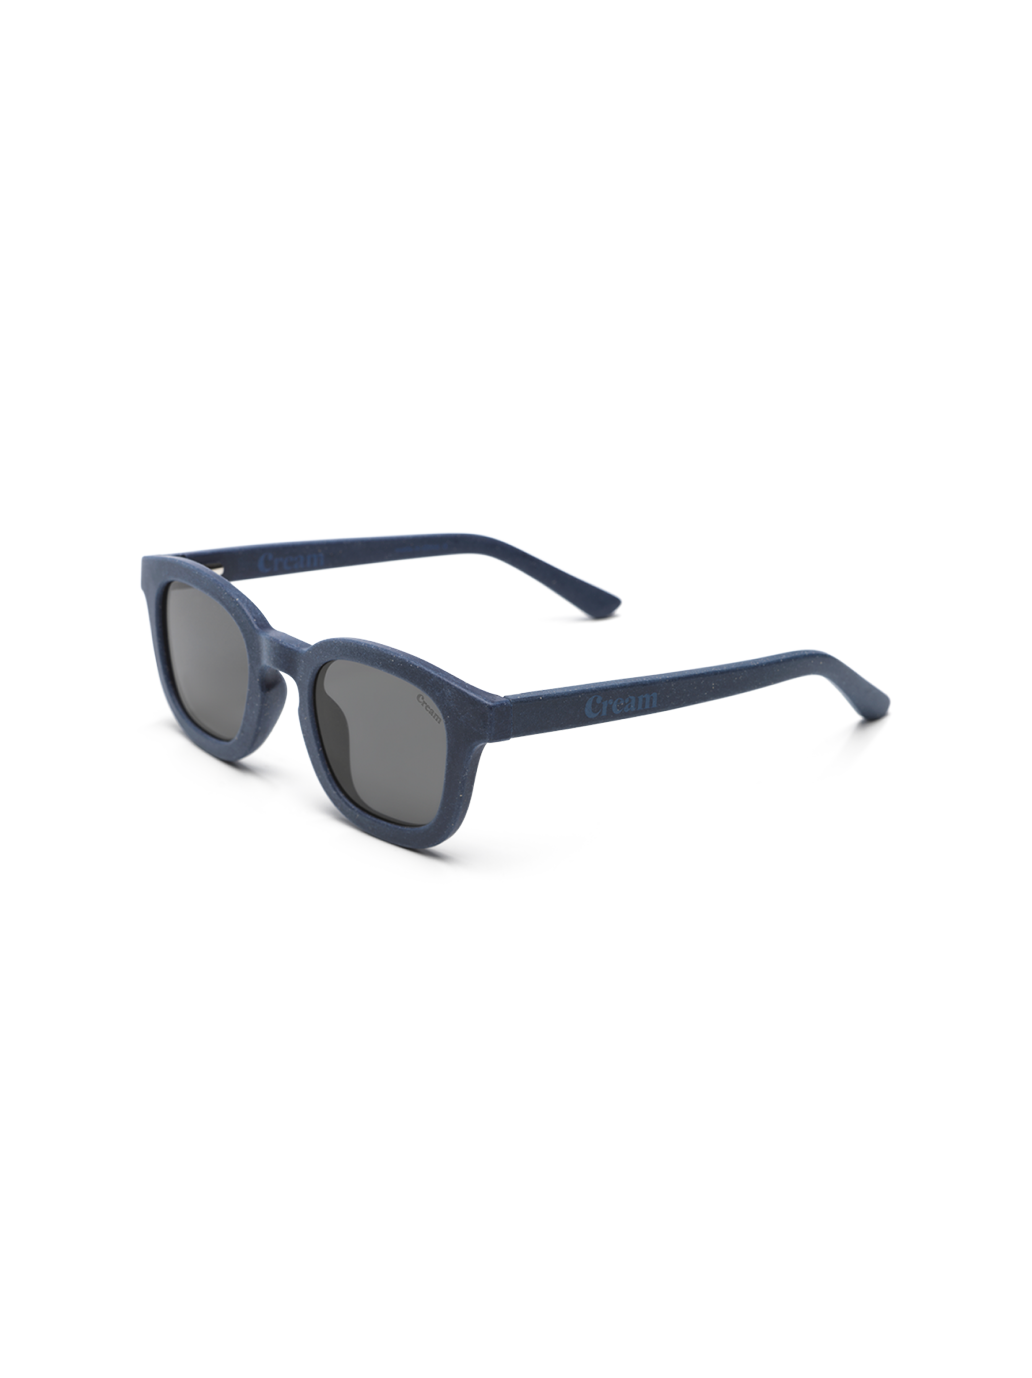 Juniorskie okulary przeciwsłoneczne 02 GL x Cream